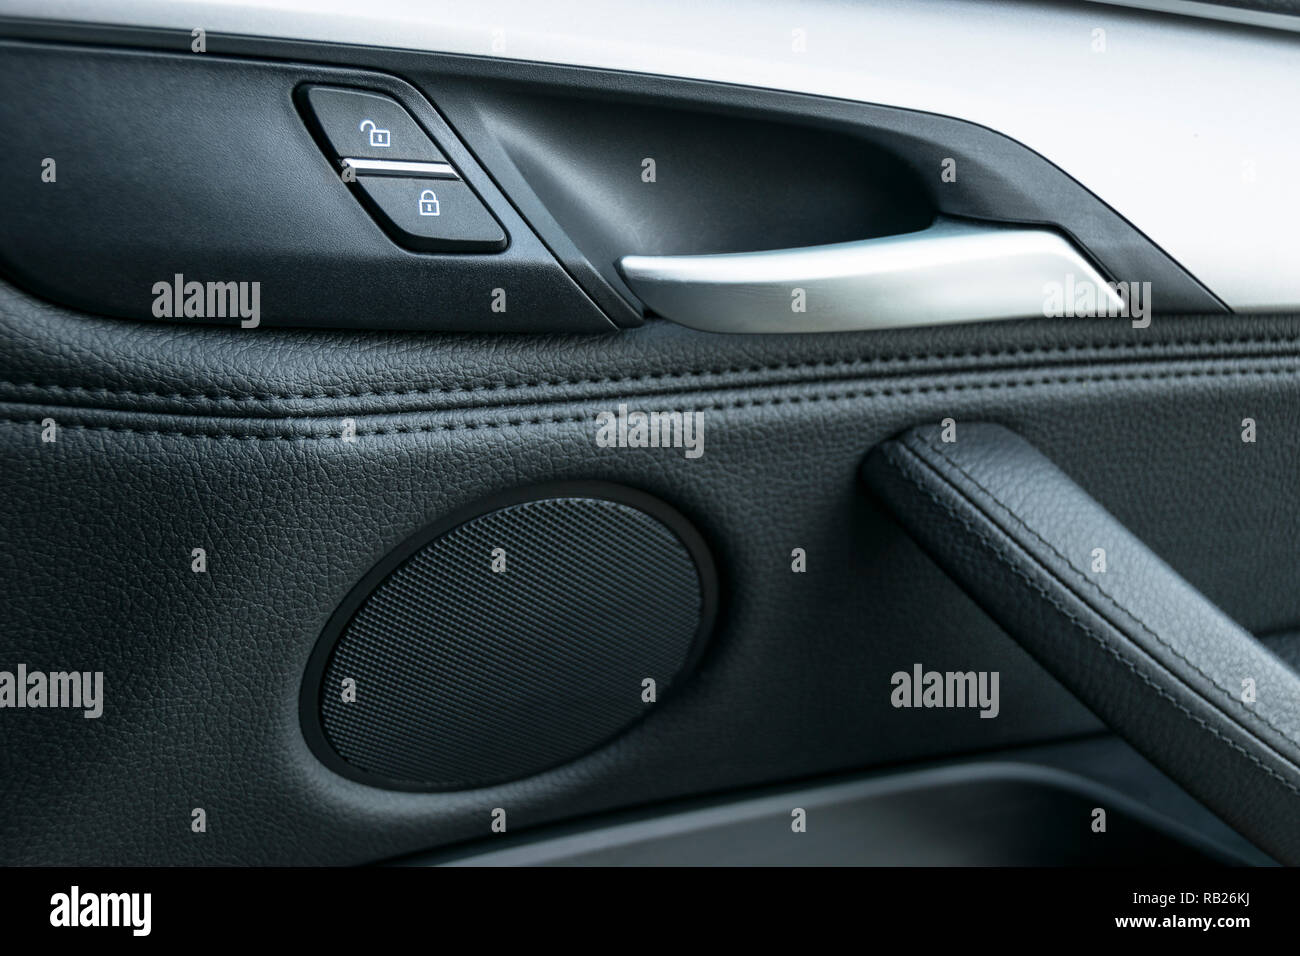 Auto Tür griff im luxuriösen, modernen Auto mit schwarzem Leder und  Schalter für die Steuerung, modernes Auto Details im Innenraum  Stockfotografie - Alamy